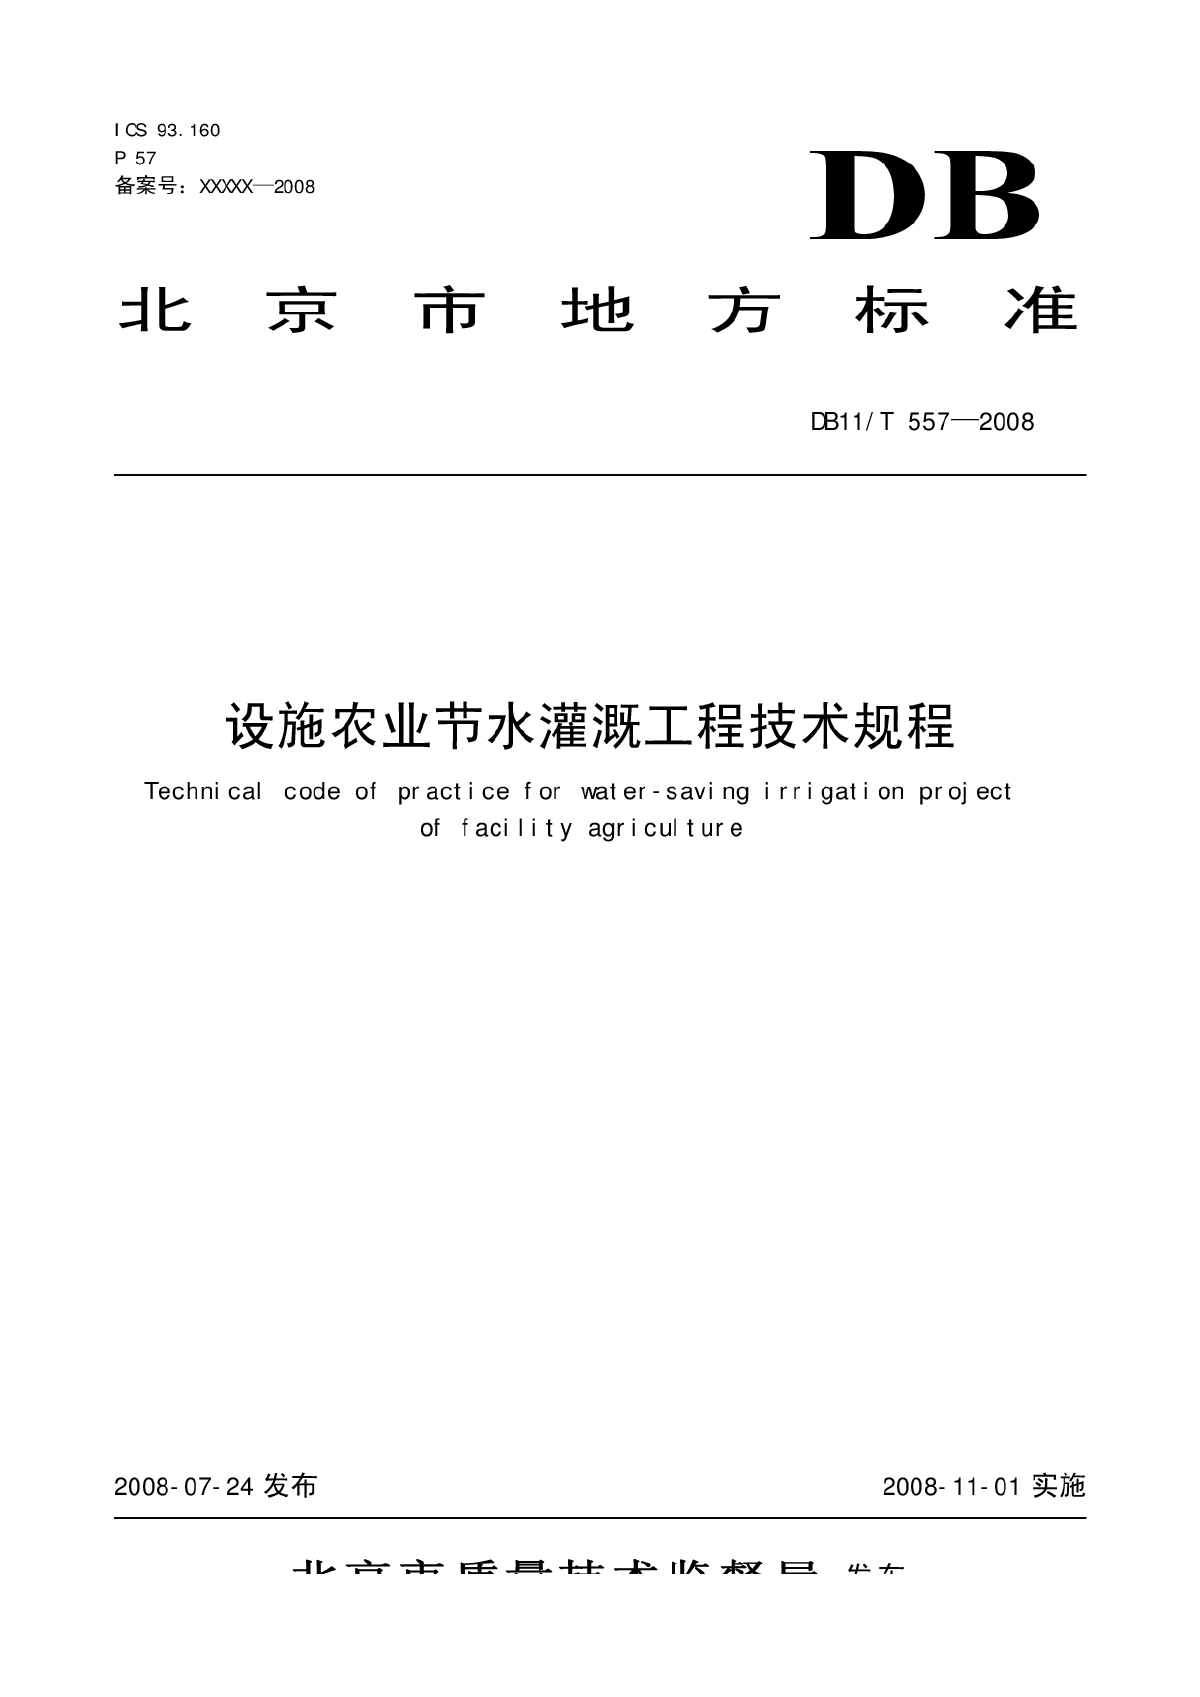 北京市设施农业节水灌溉技术工程规程（DB11/T 557—2008）-图一